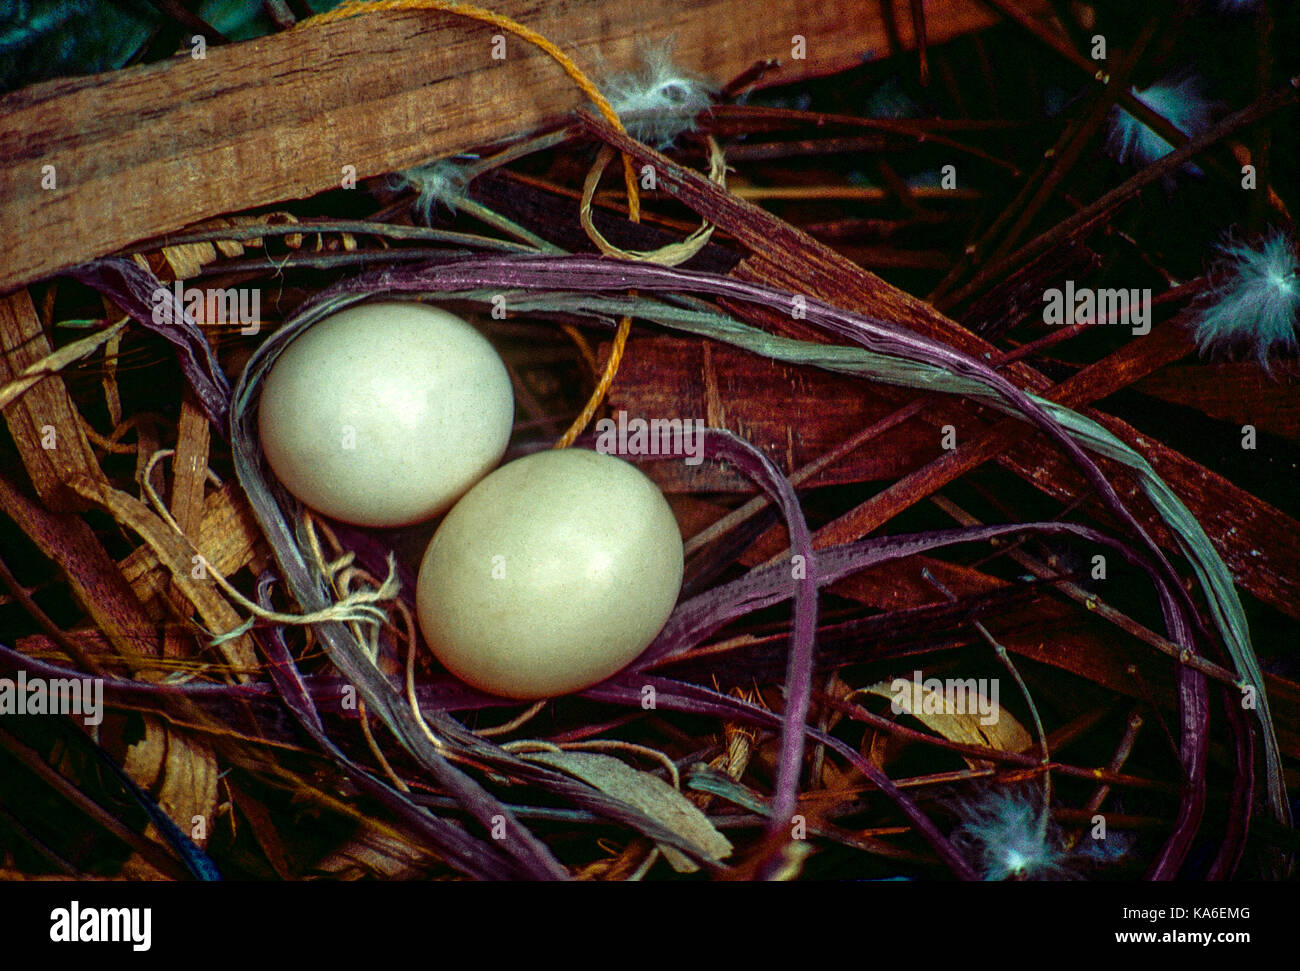 Tauben Eier im Nest, Indien, Asien - stp 258970 Stockfoto